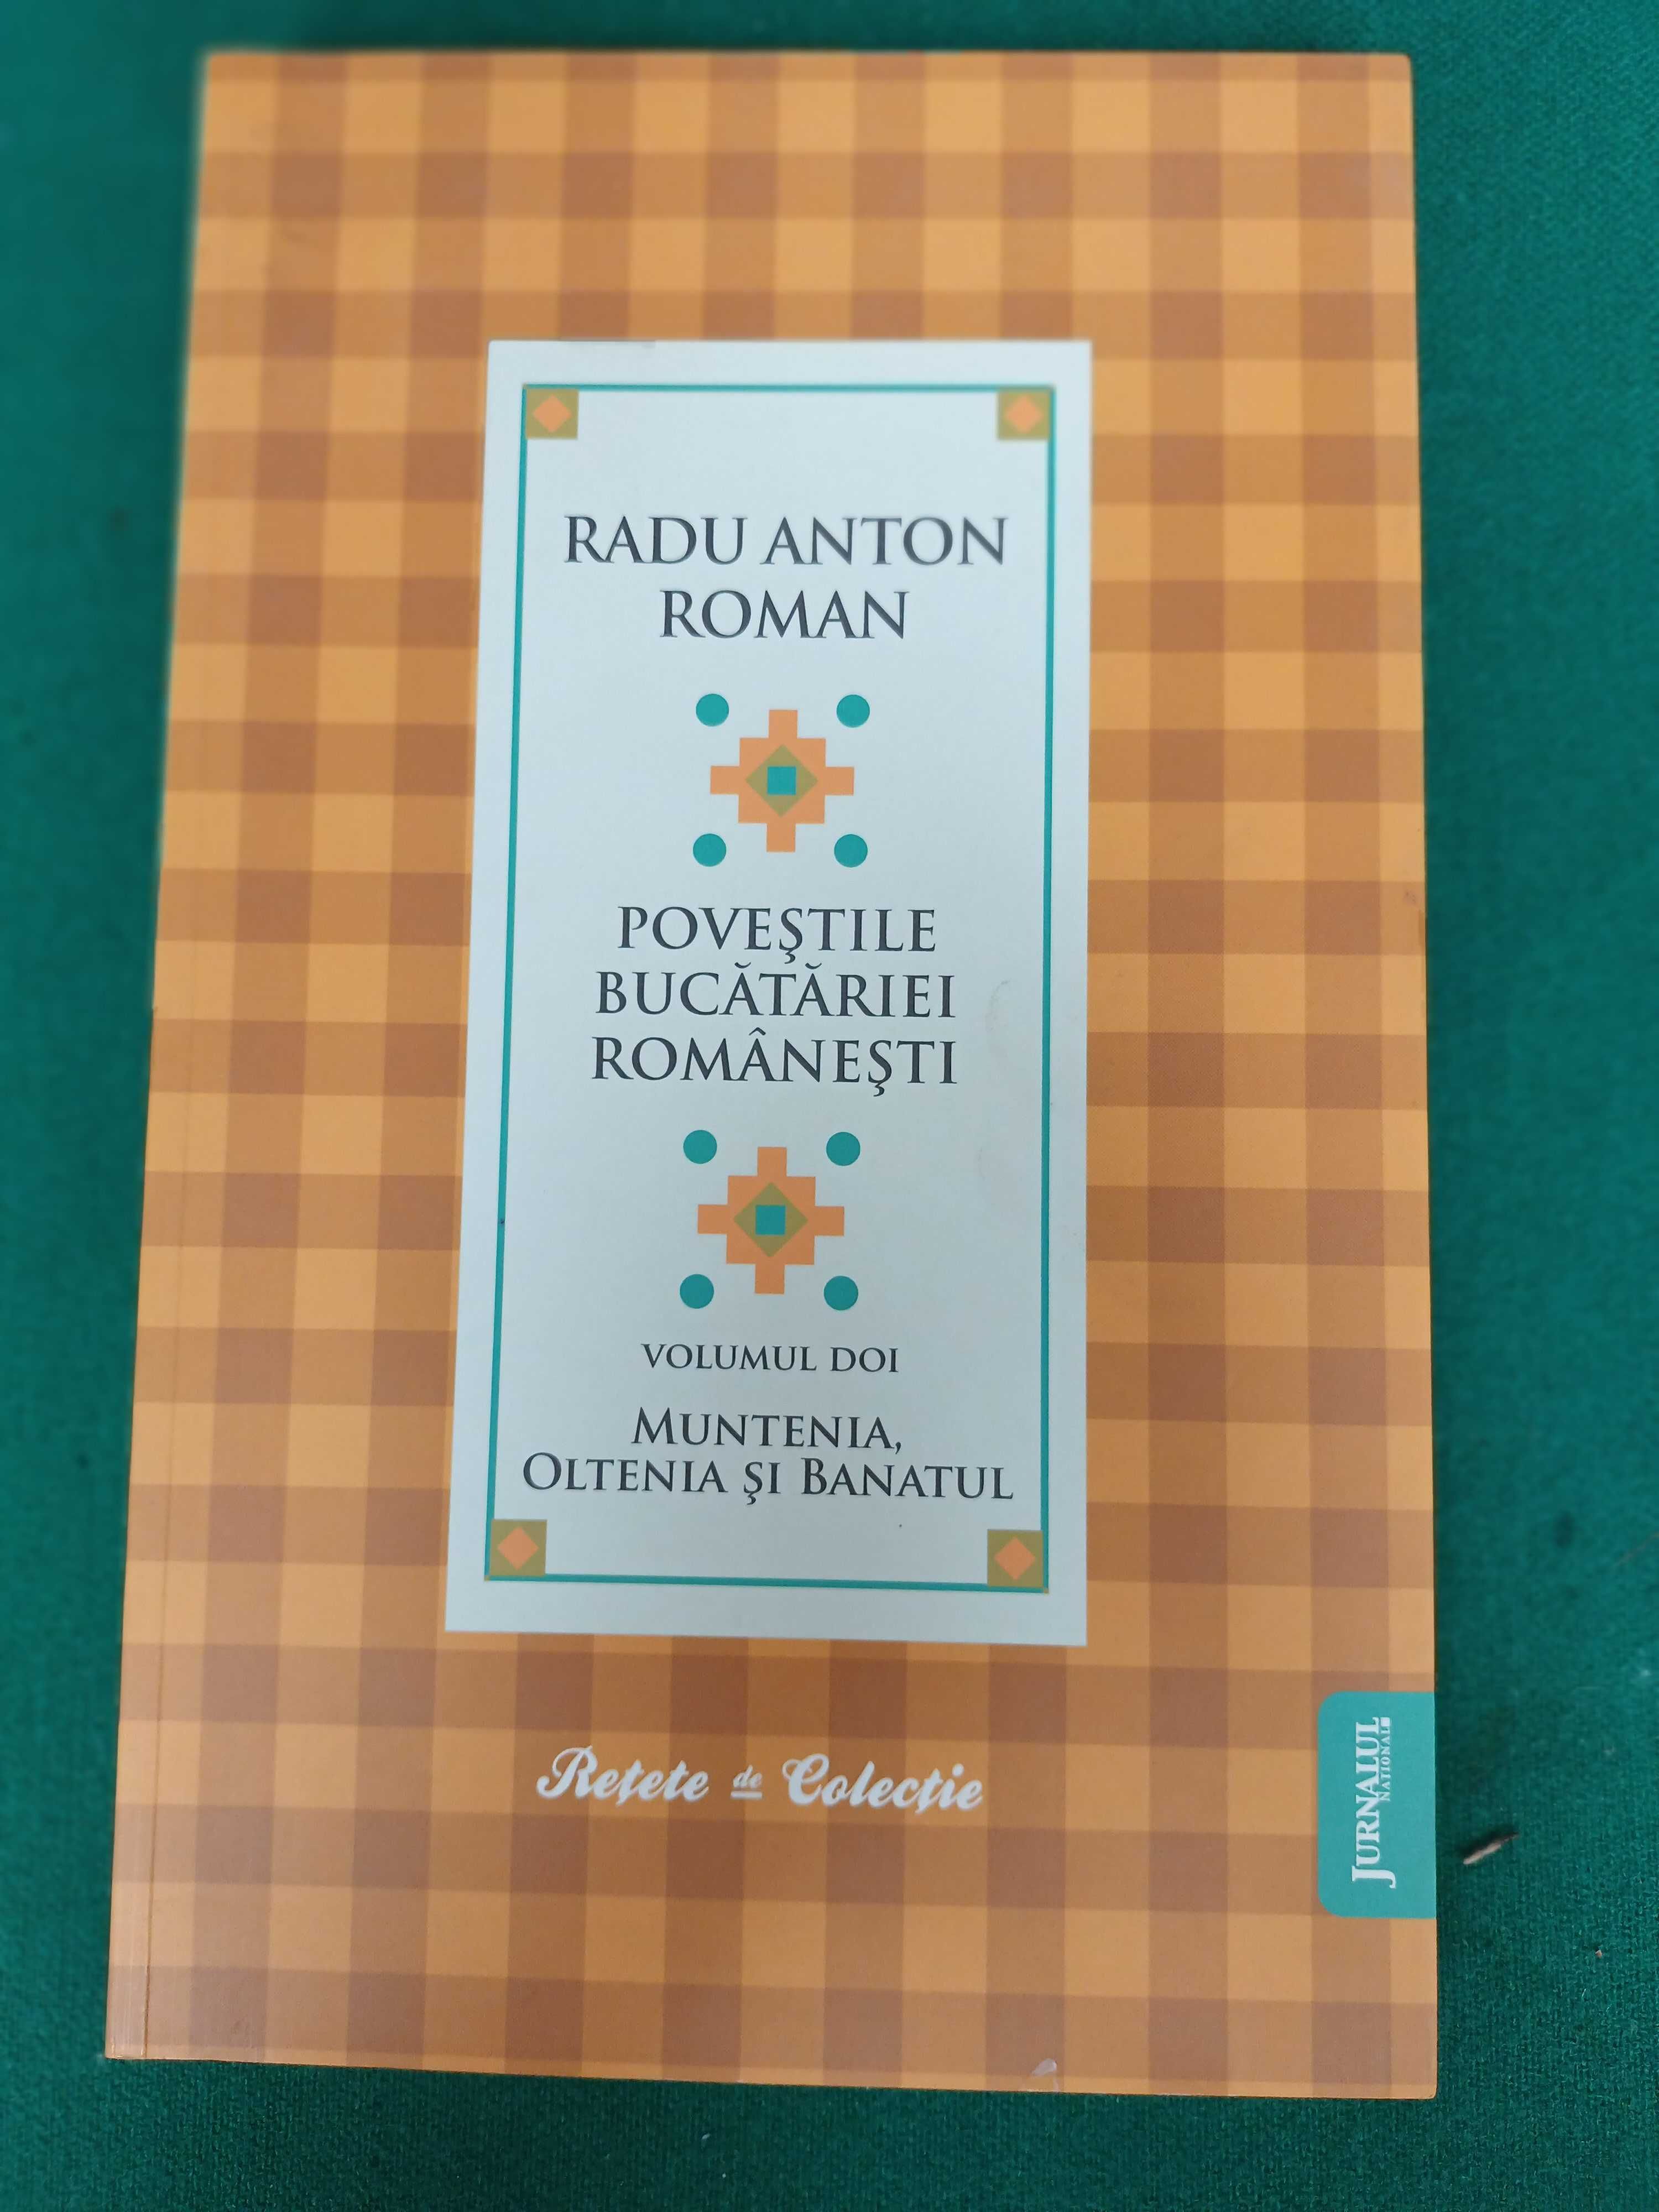 Povesti bucataresti romanesti- autor Radu Anton Roman